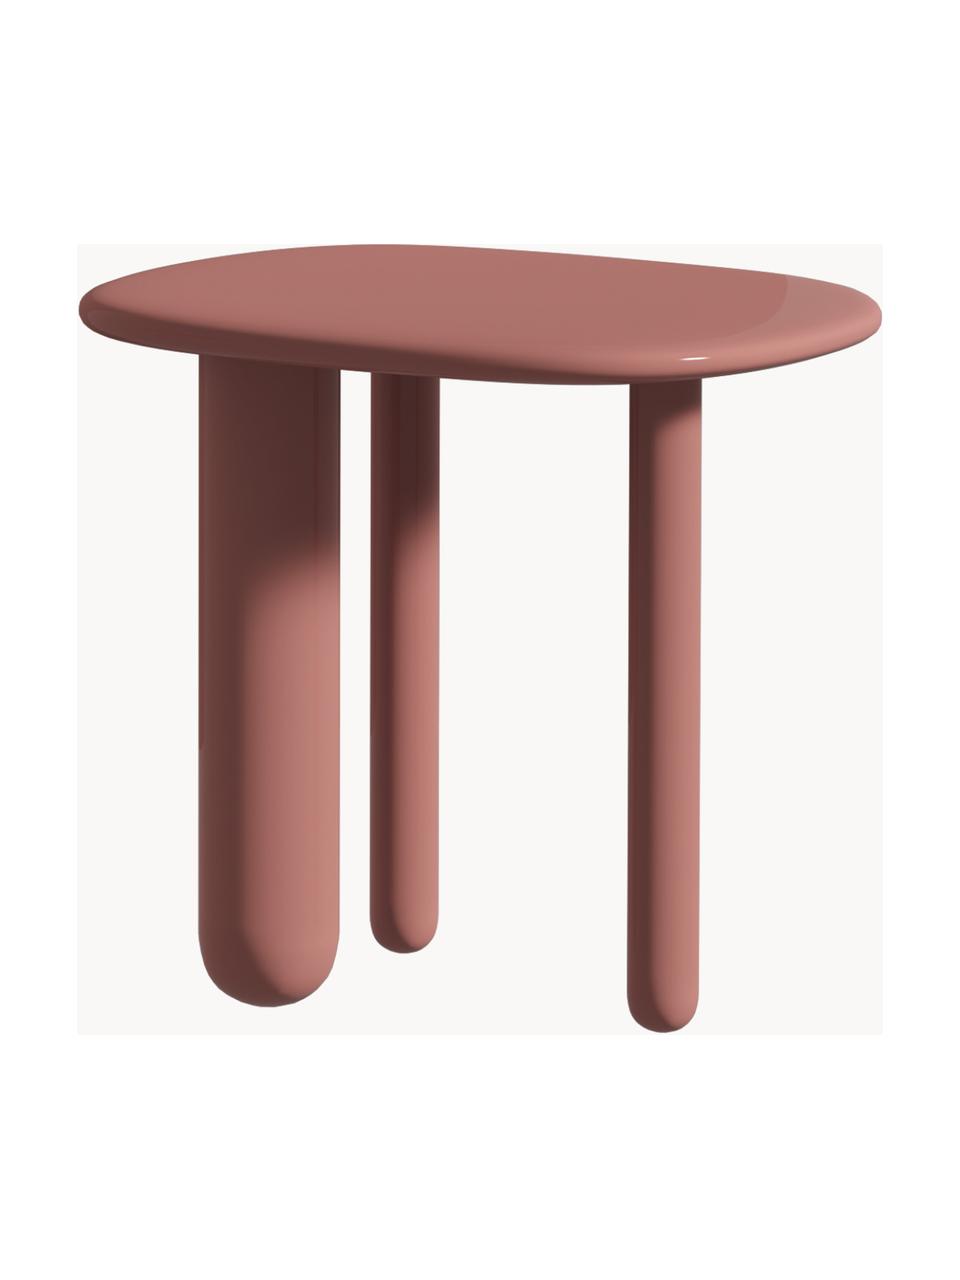 Oválný odkládací stolek Tottori, Lakovaná dřevovláknitá deska střední hustoty (MDF), Dřevo, lakované starorůžovou barvou, Š 54 cm, V 49 cm